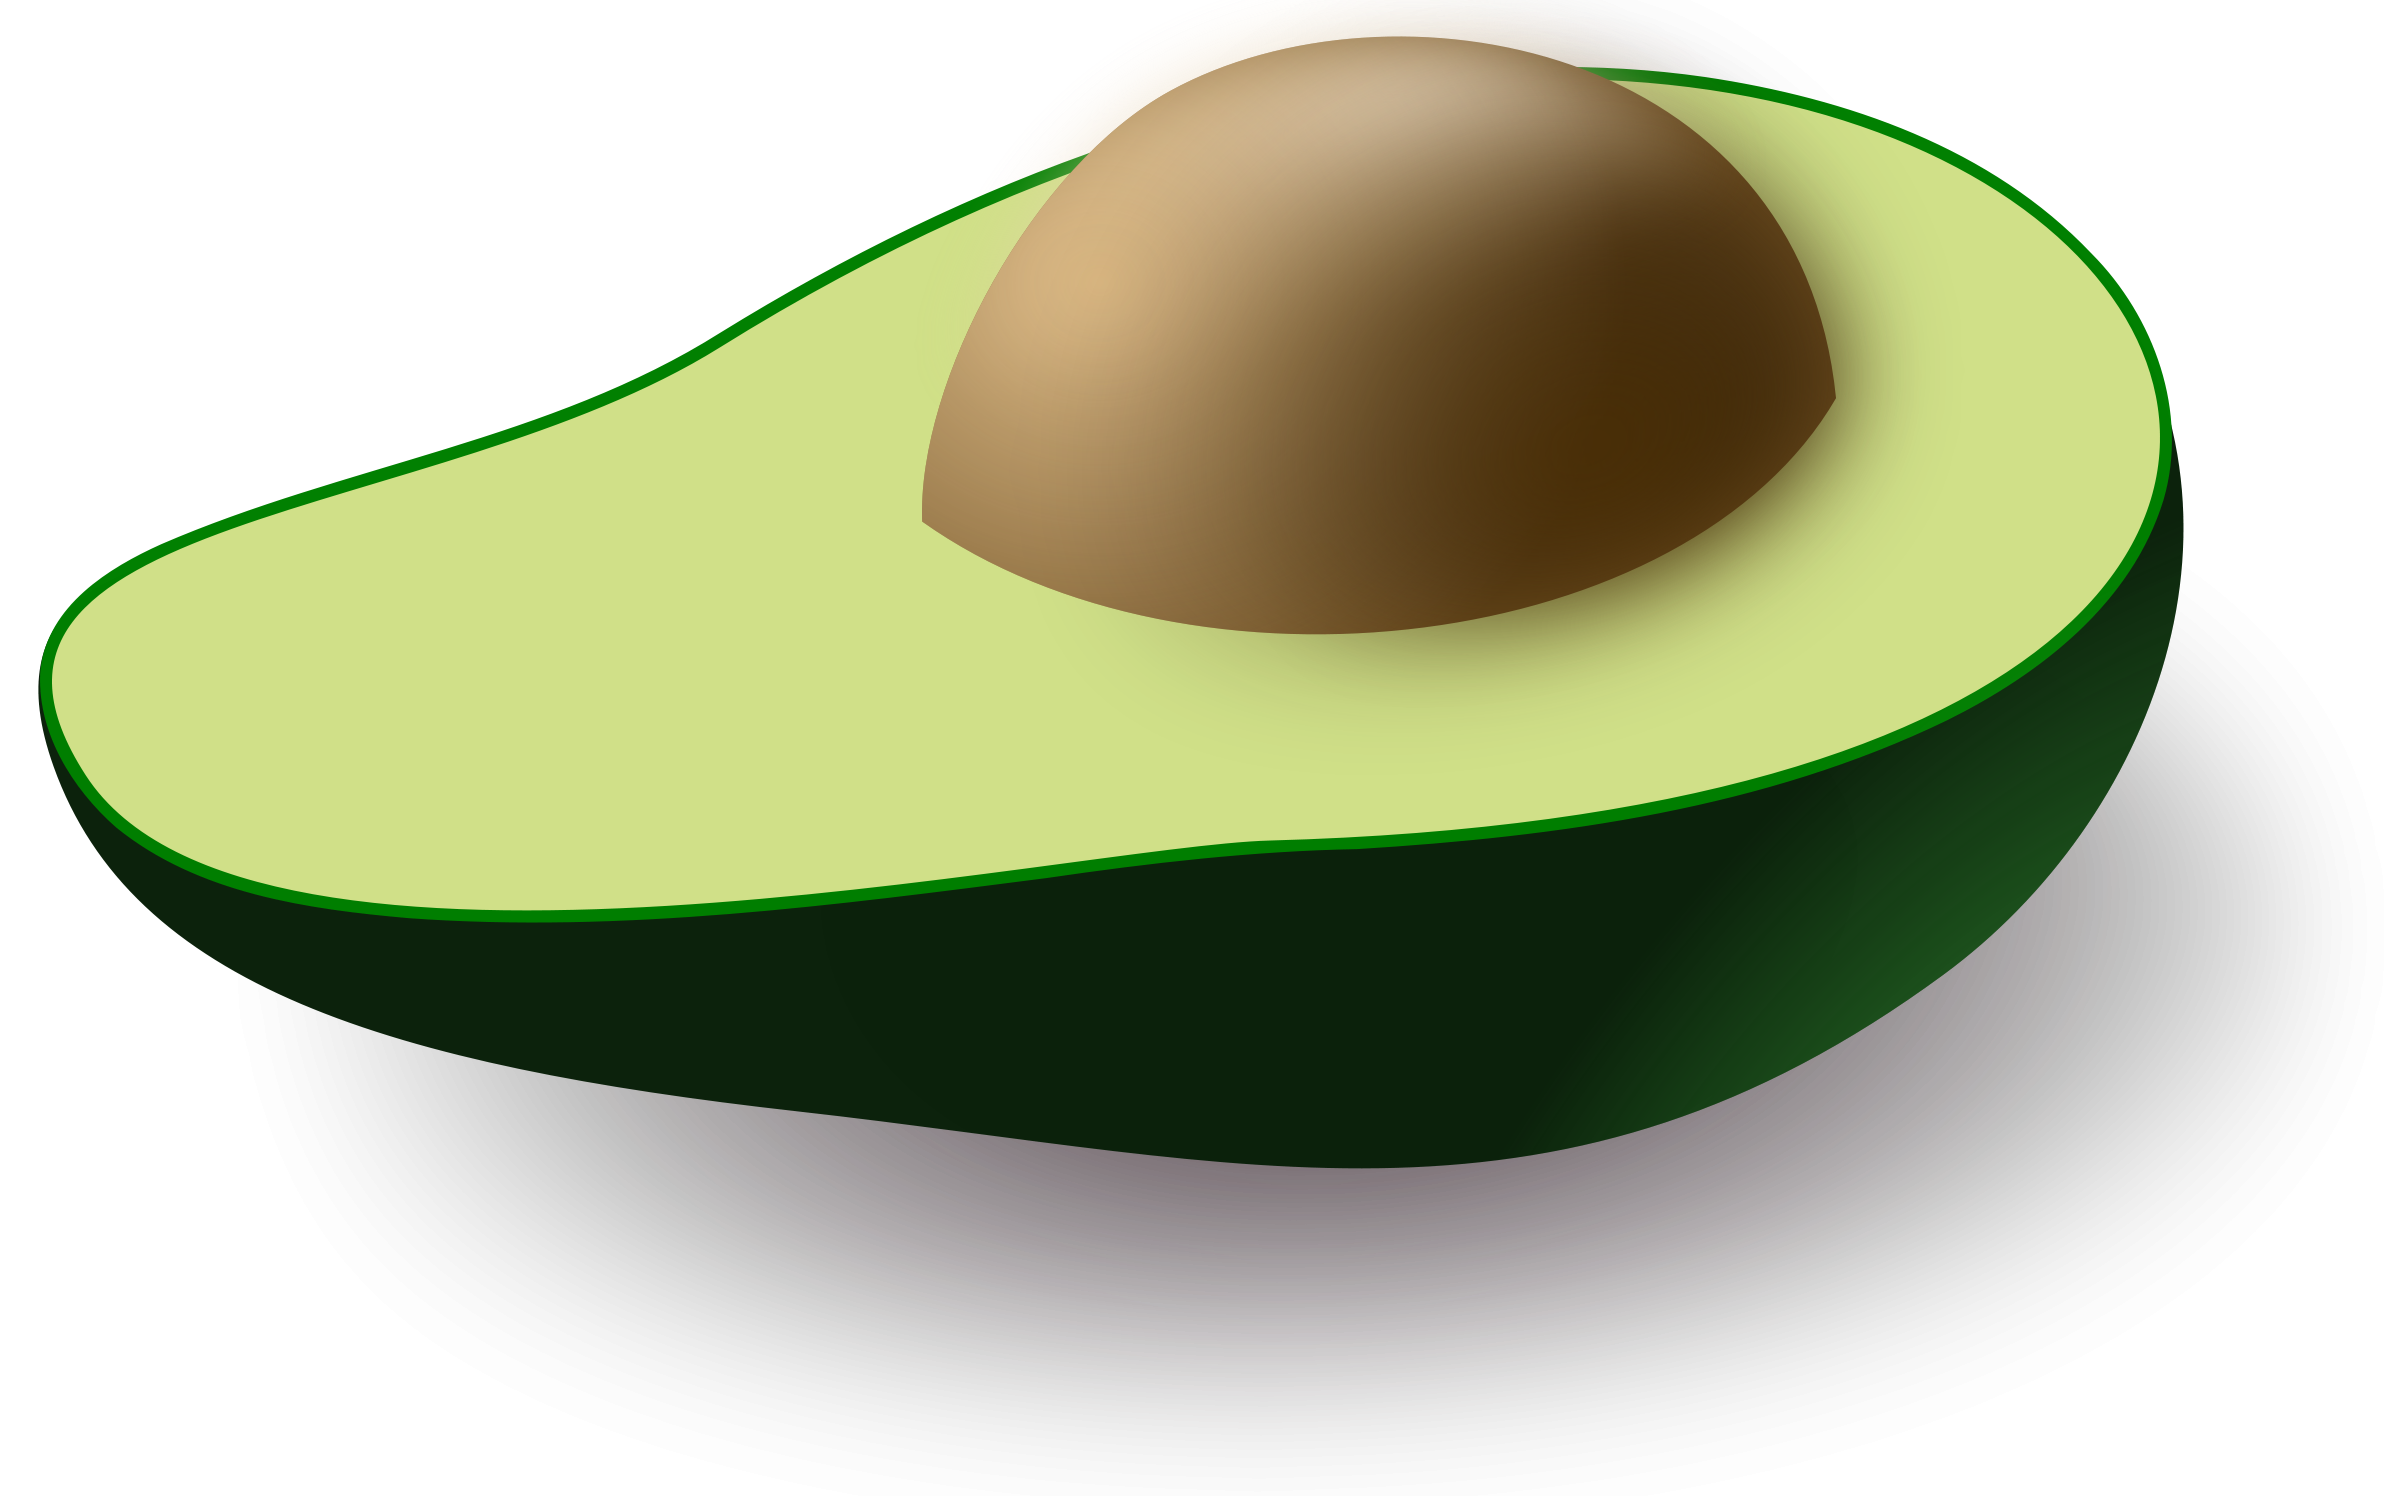 Immagini di avocado